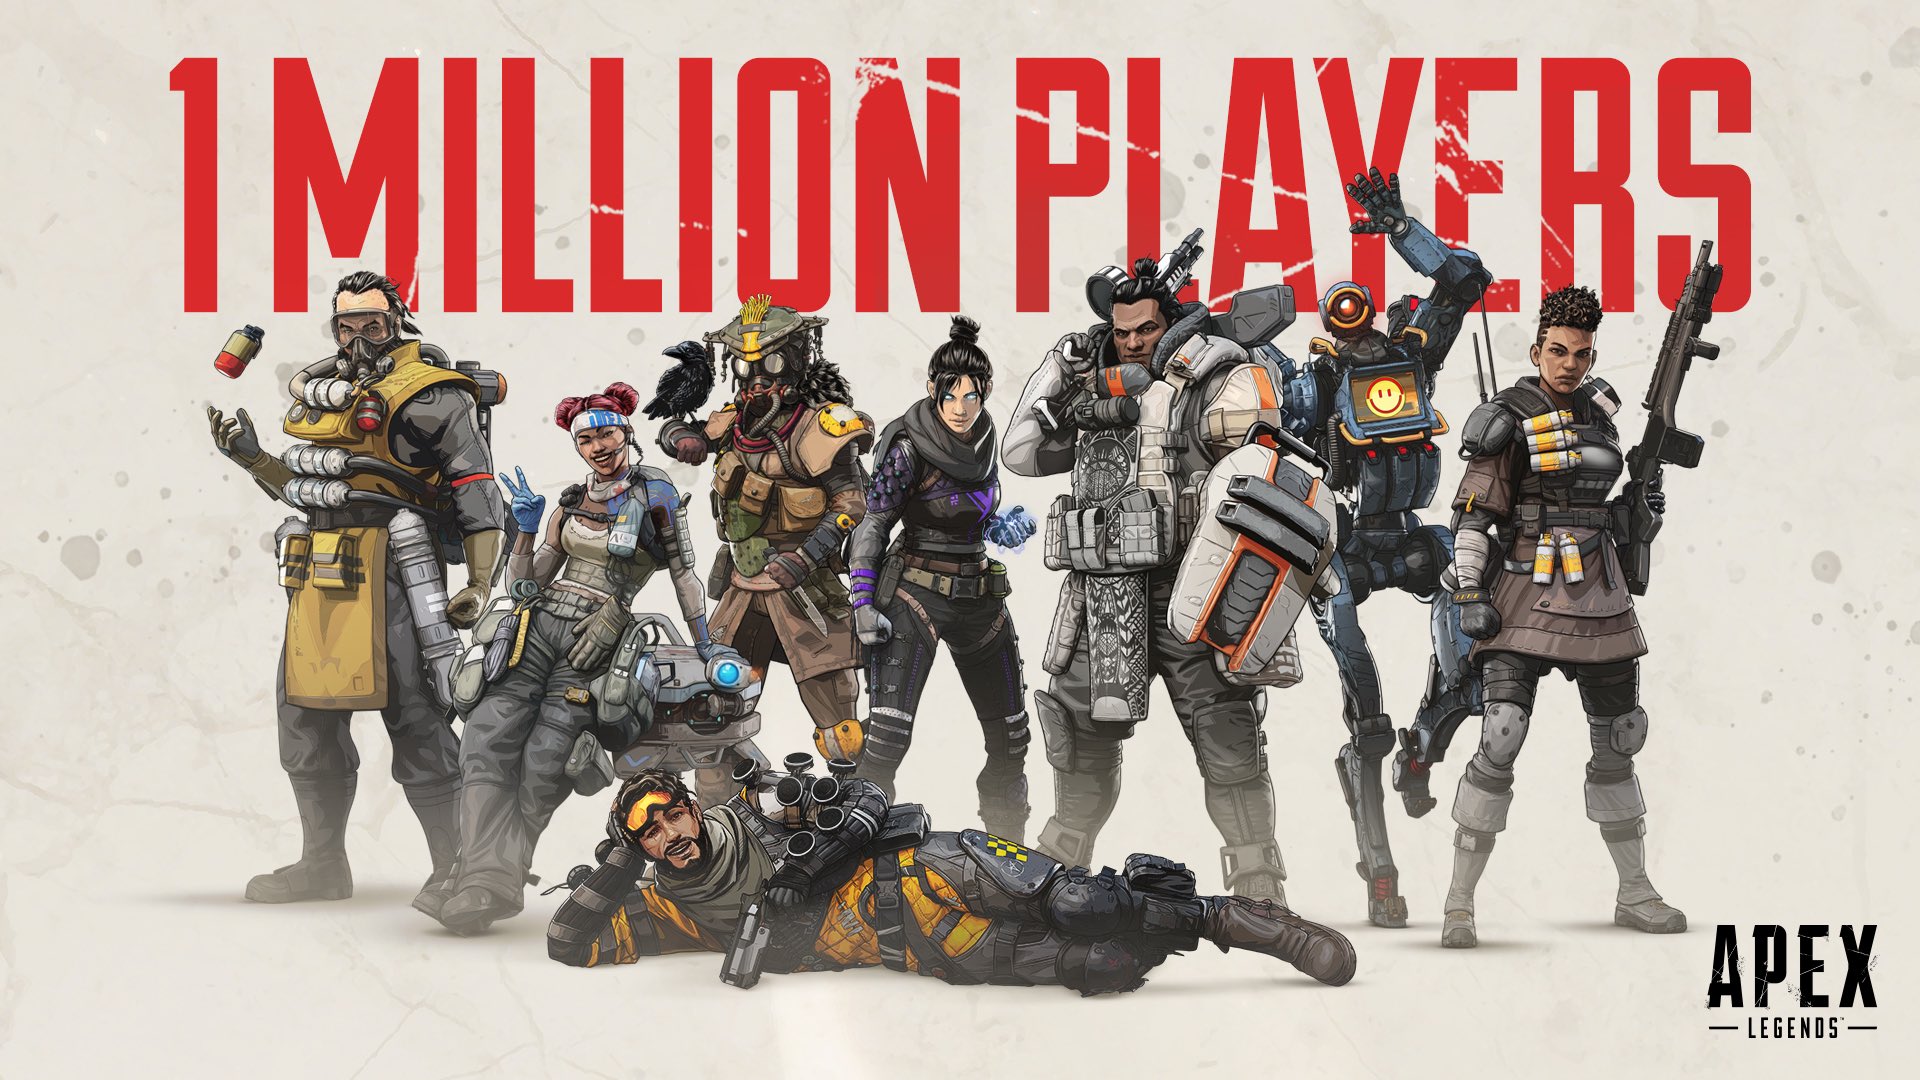 Det tok under 8 timer å nå 1 million spillere